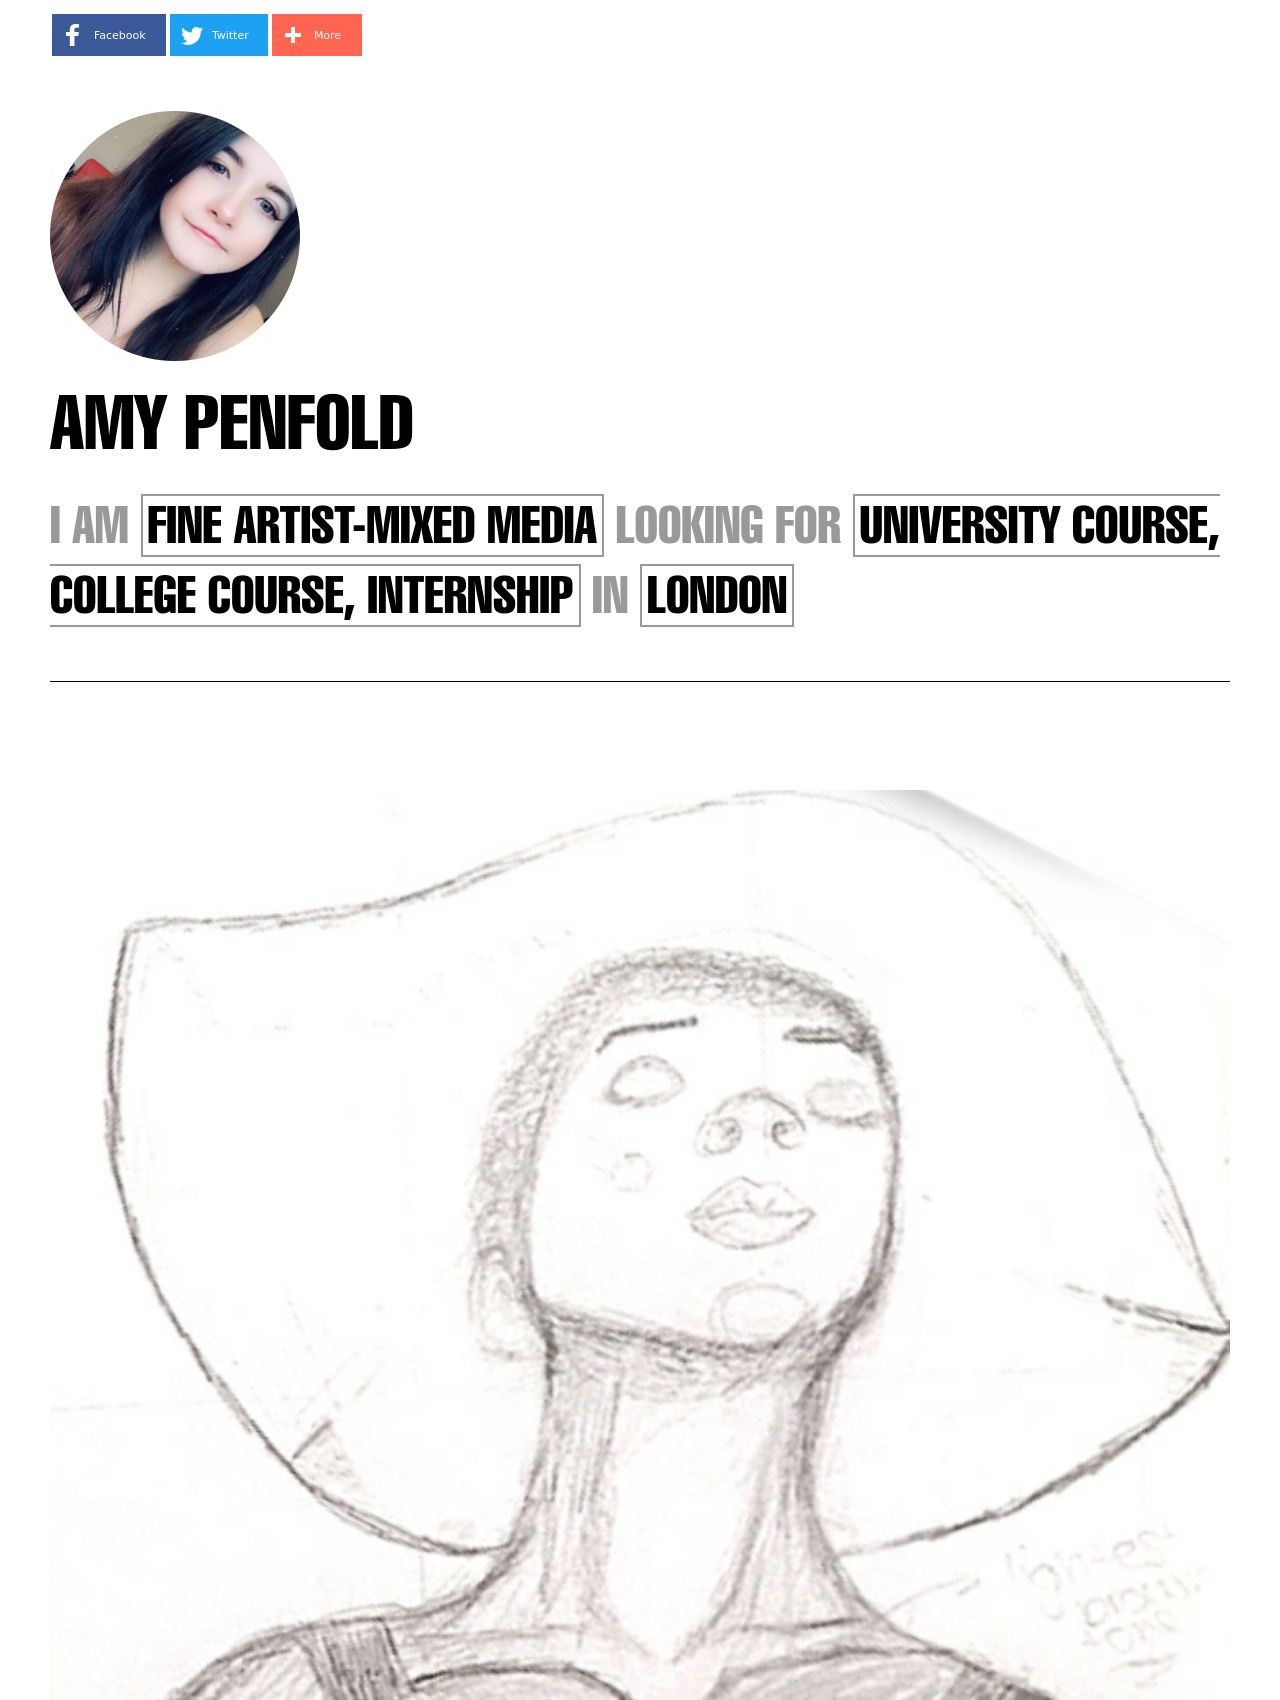 Amy Penfold